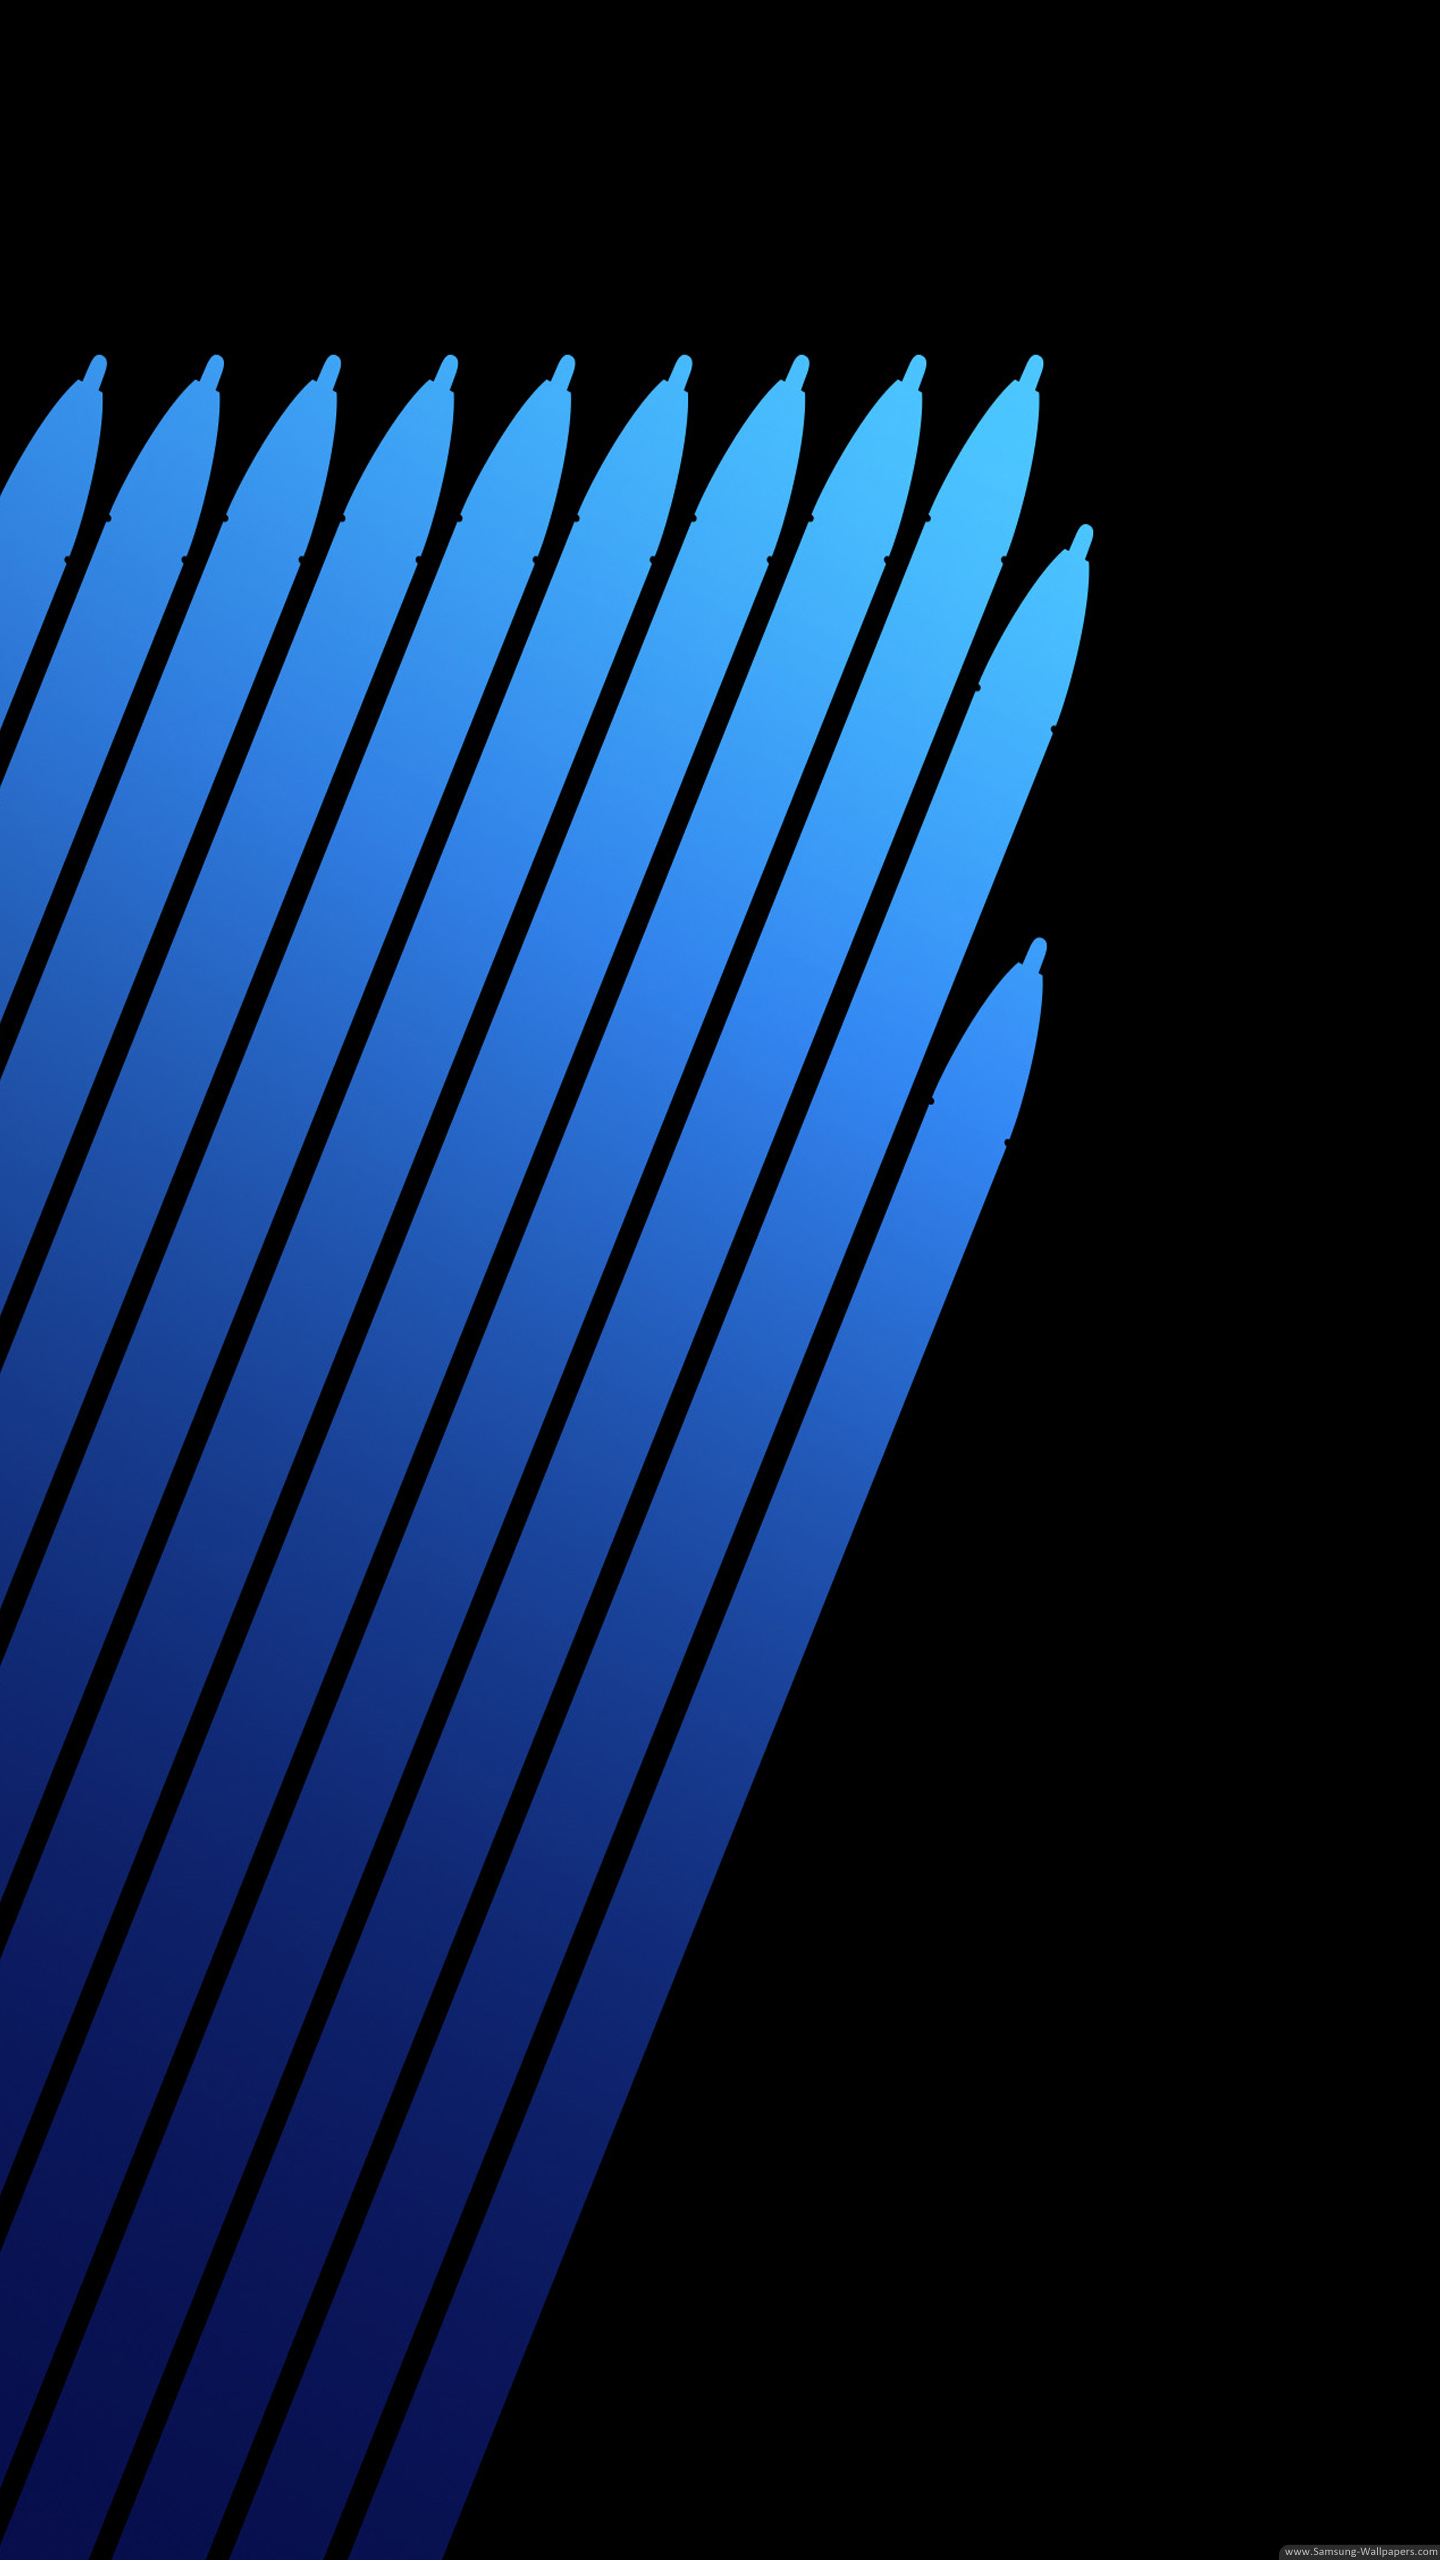 galaxy note 7 fondos de pantalla de stock,azul,azul cobalto,azul eléctrico,negro,ligero